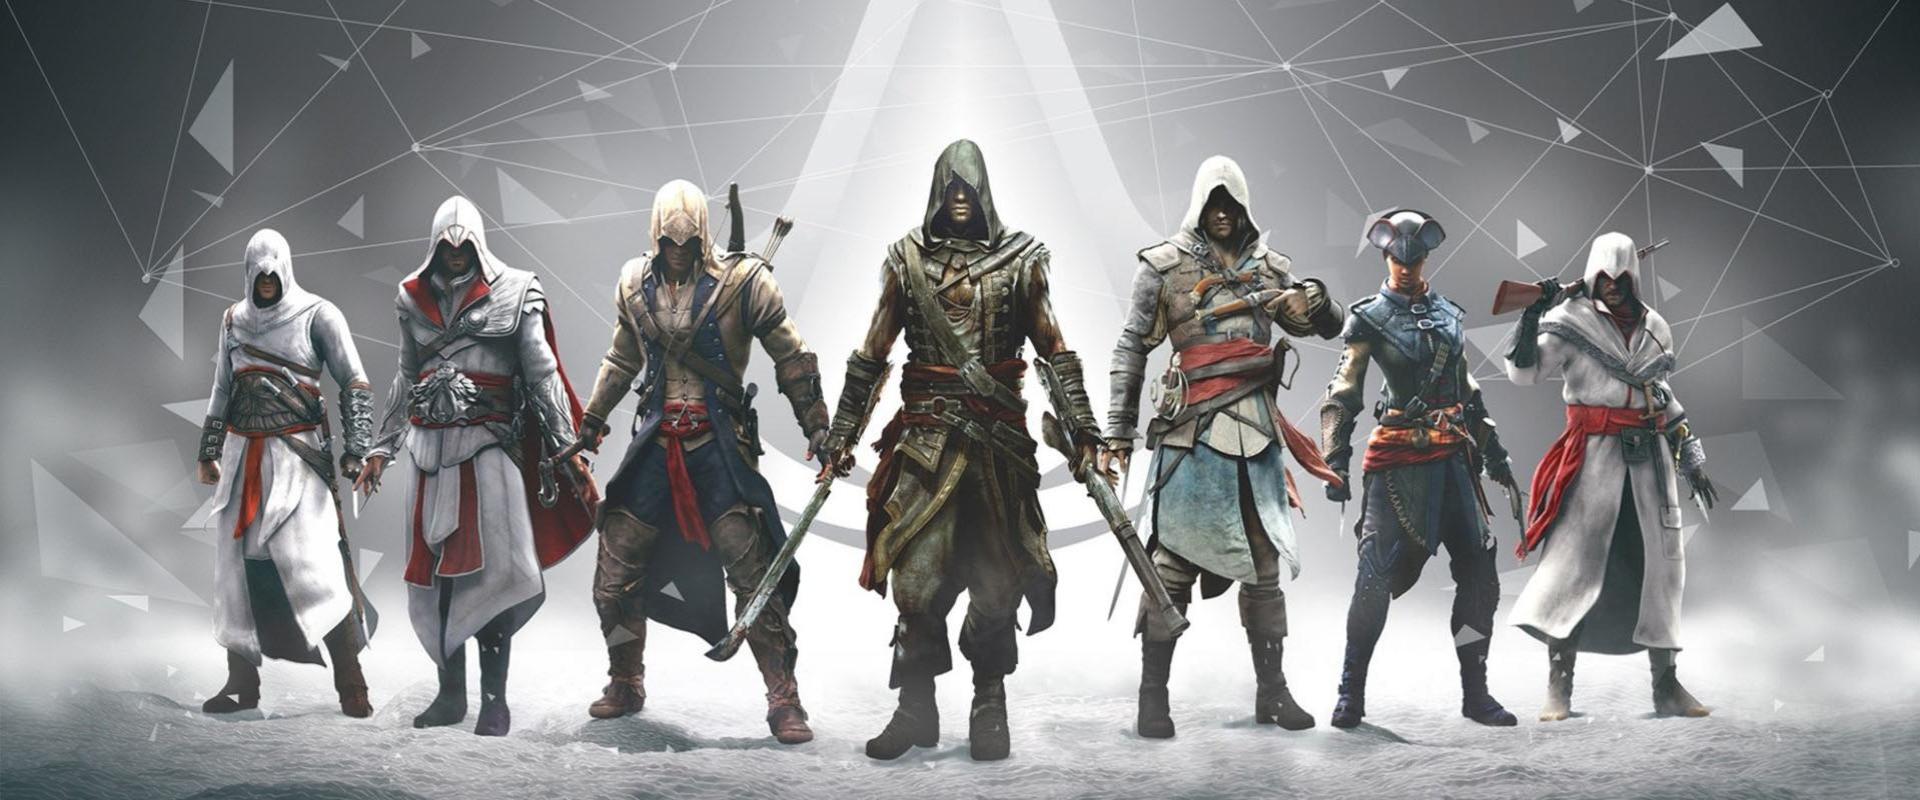 Szivárgás buktatta le az Assassin's Creed Shadows főszereplőinek külsejét